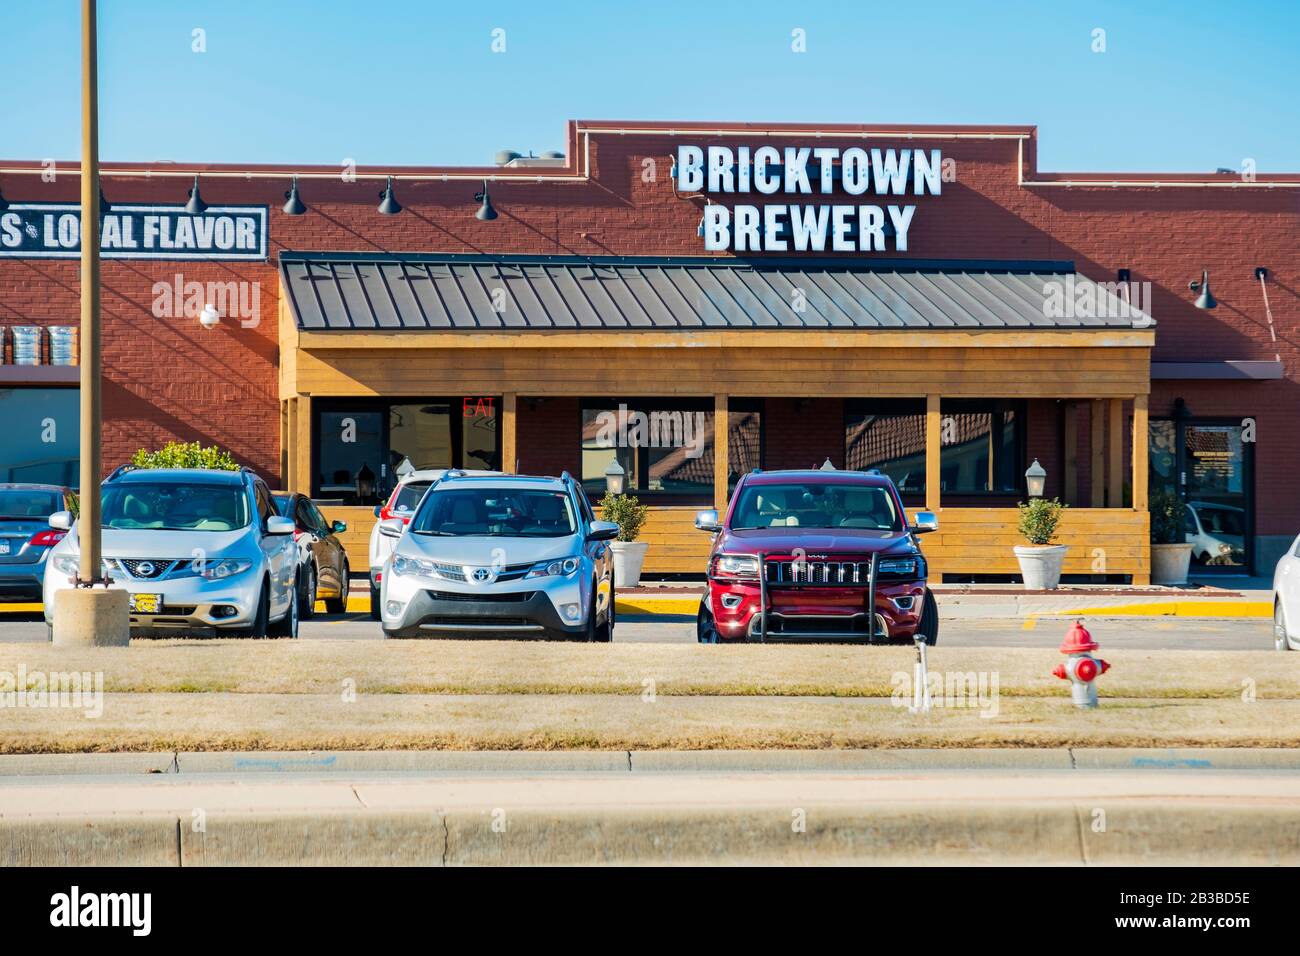 Bricktown Brewery, ein Kettenbetrieb mit handwerklichen Bieren und gutem Essen. Wichita, Kansas, USA. Stockfoto